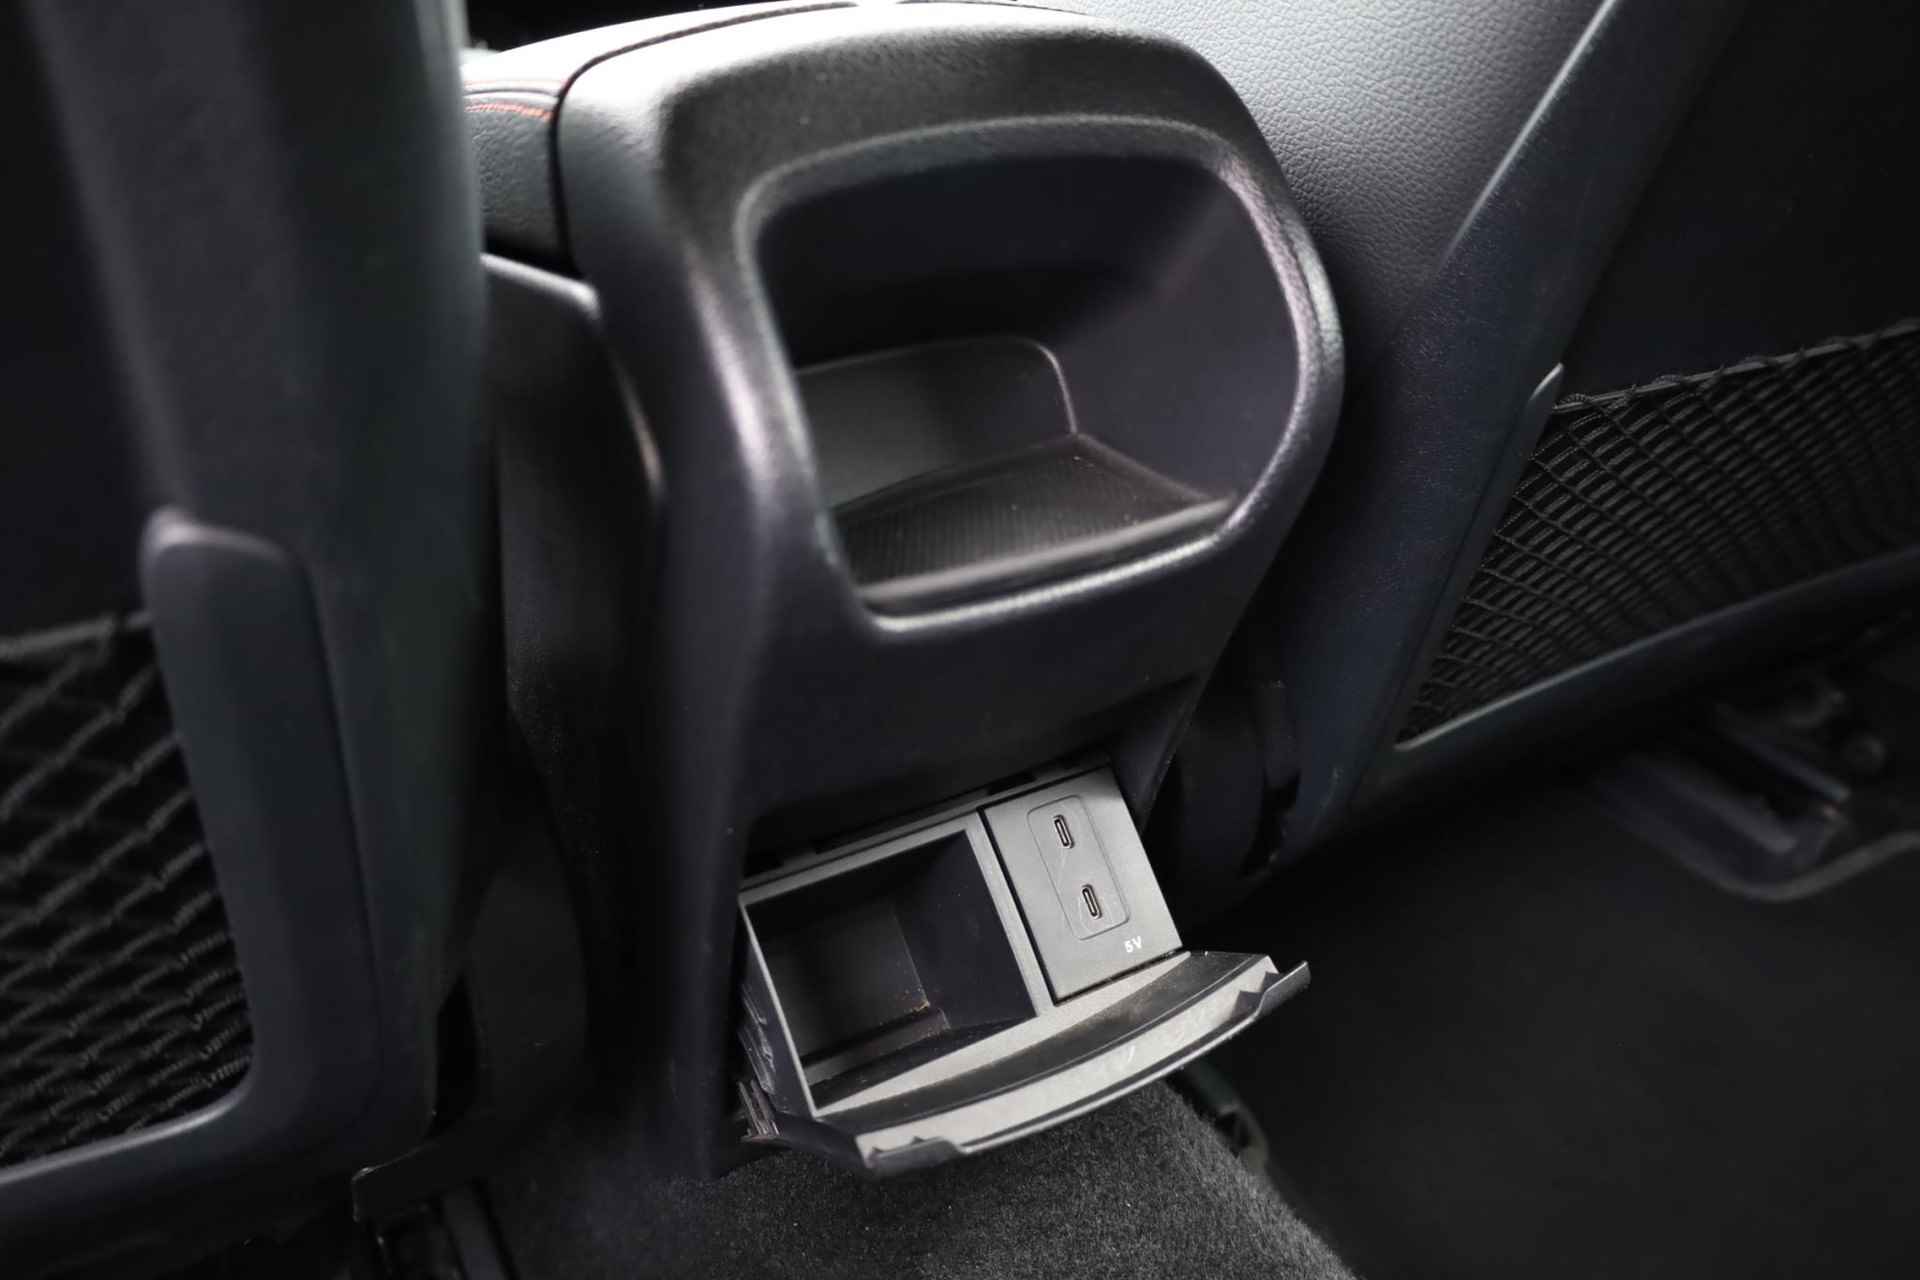 Mercedes-Benz A-klasse 200 Business Solution AMG 120KW/163PK automaat, Leder / alcantara, winterset LMV digitaal dashboard, navigatie, LED verlichting voor en achter, 18" LMV, stoelverwarming, parkeersensoren voor en achter, AMG bumpers - 40/44